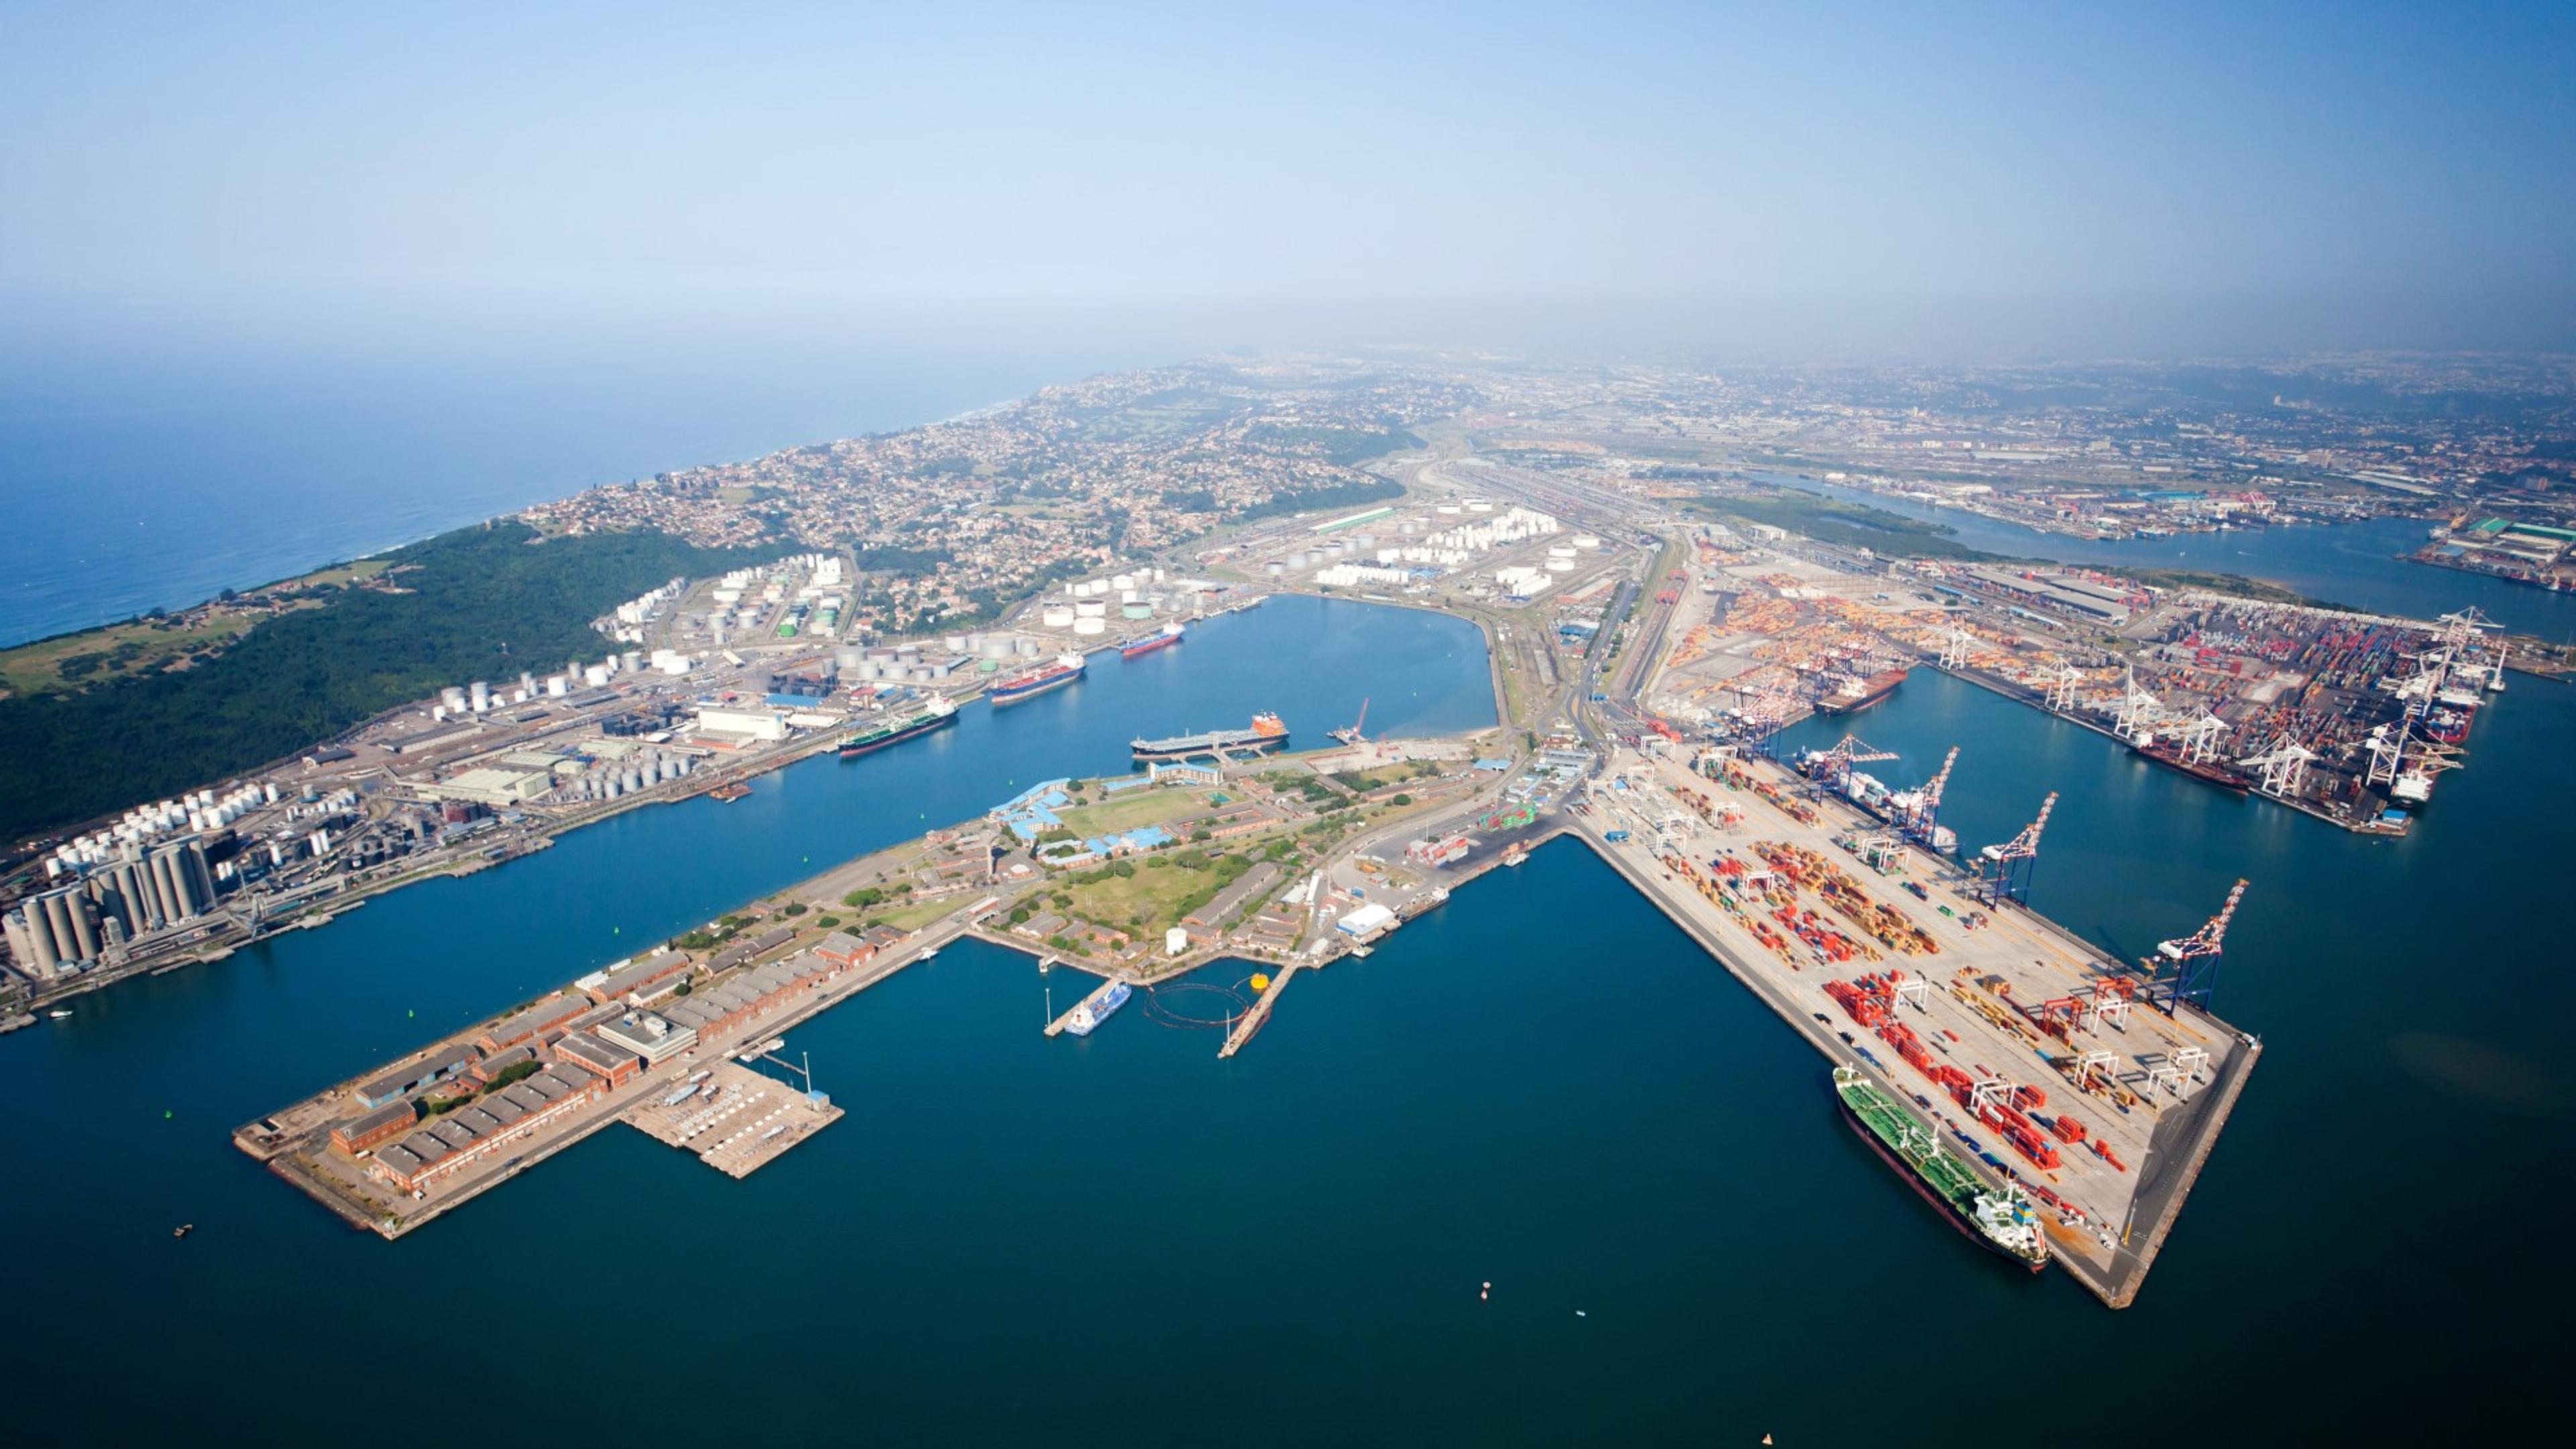 Durban havneområde i Sør-Afrika sett fra oven